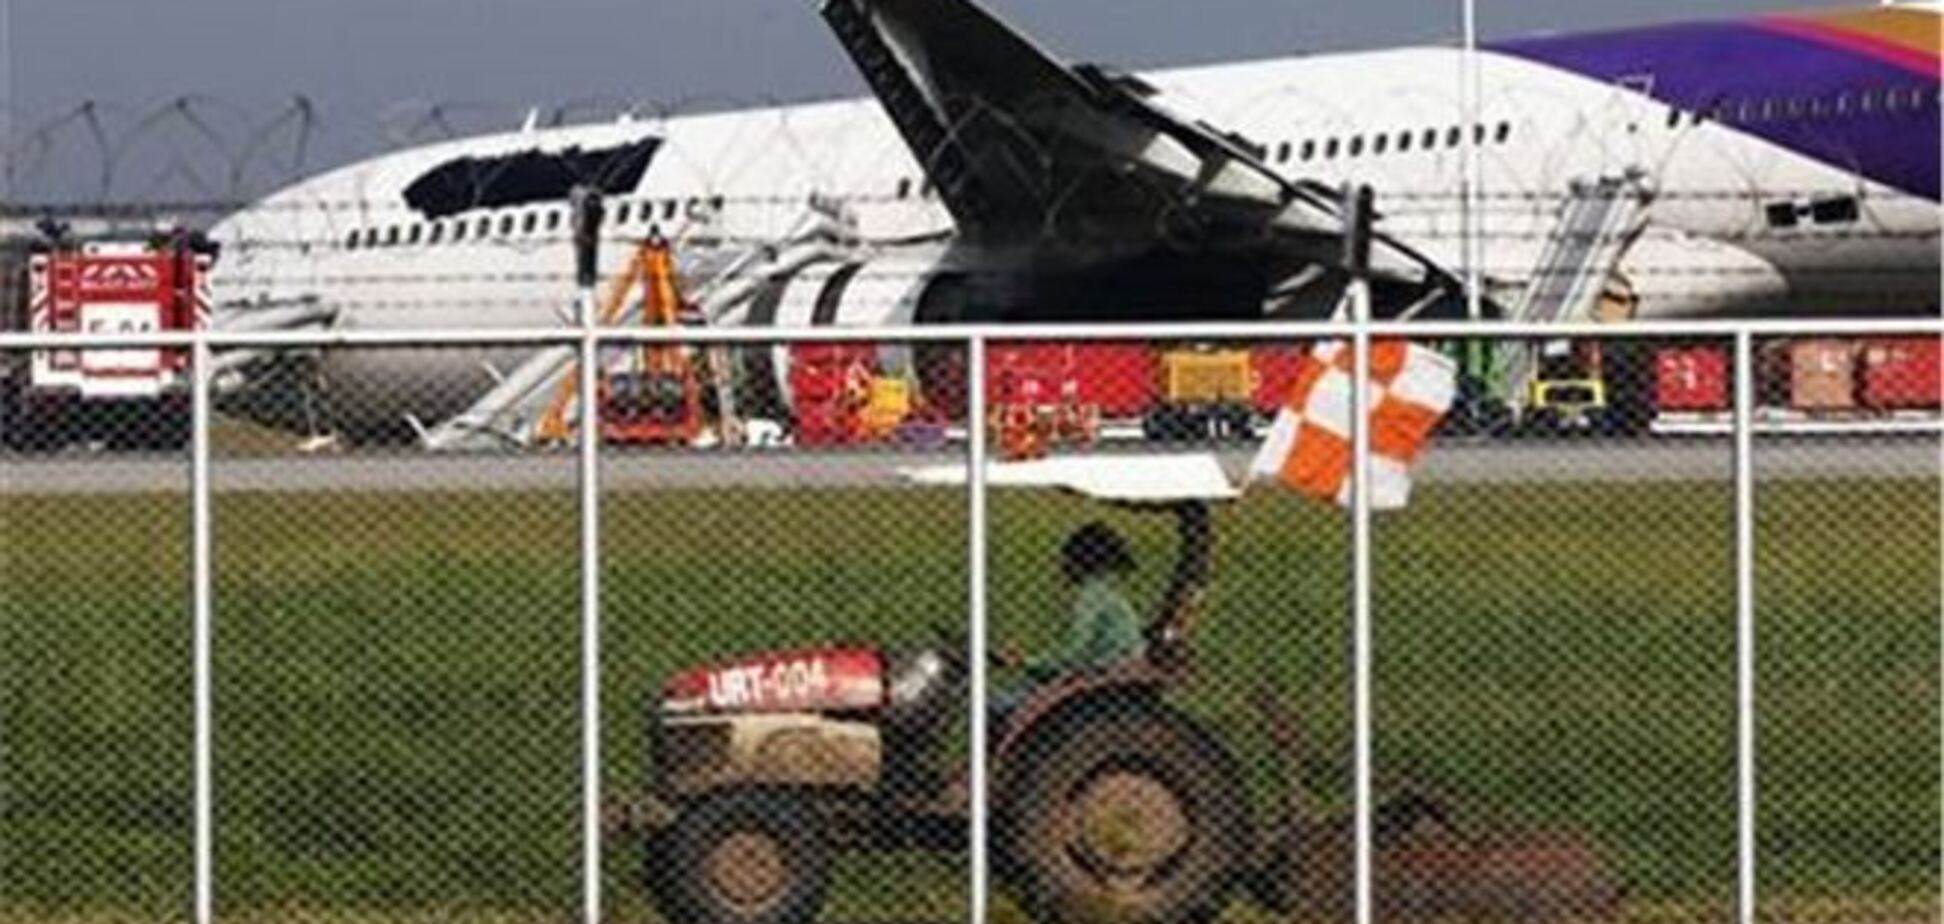 Во время посадки самолета в Таиланде пострадали 14 пассажиров